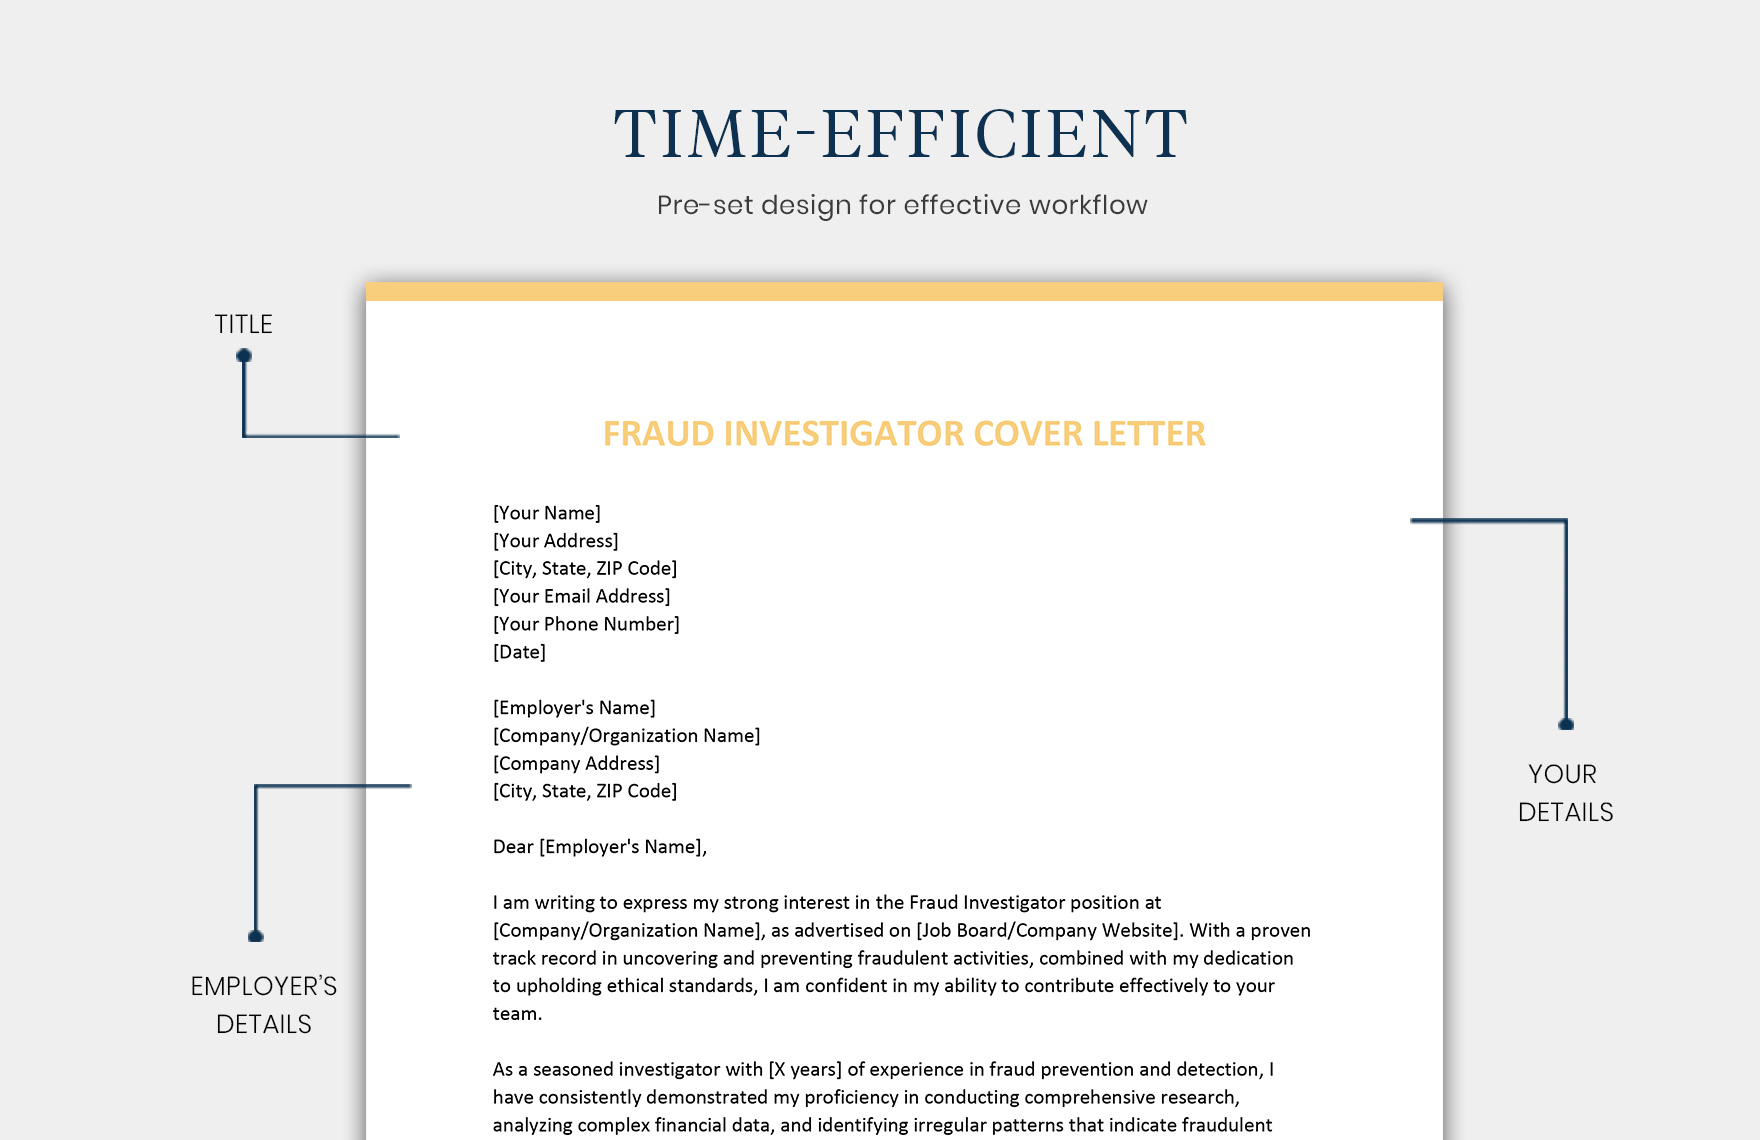 Fraud Investigator Cover Letter